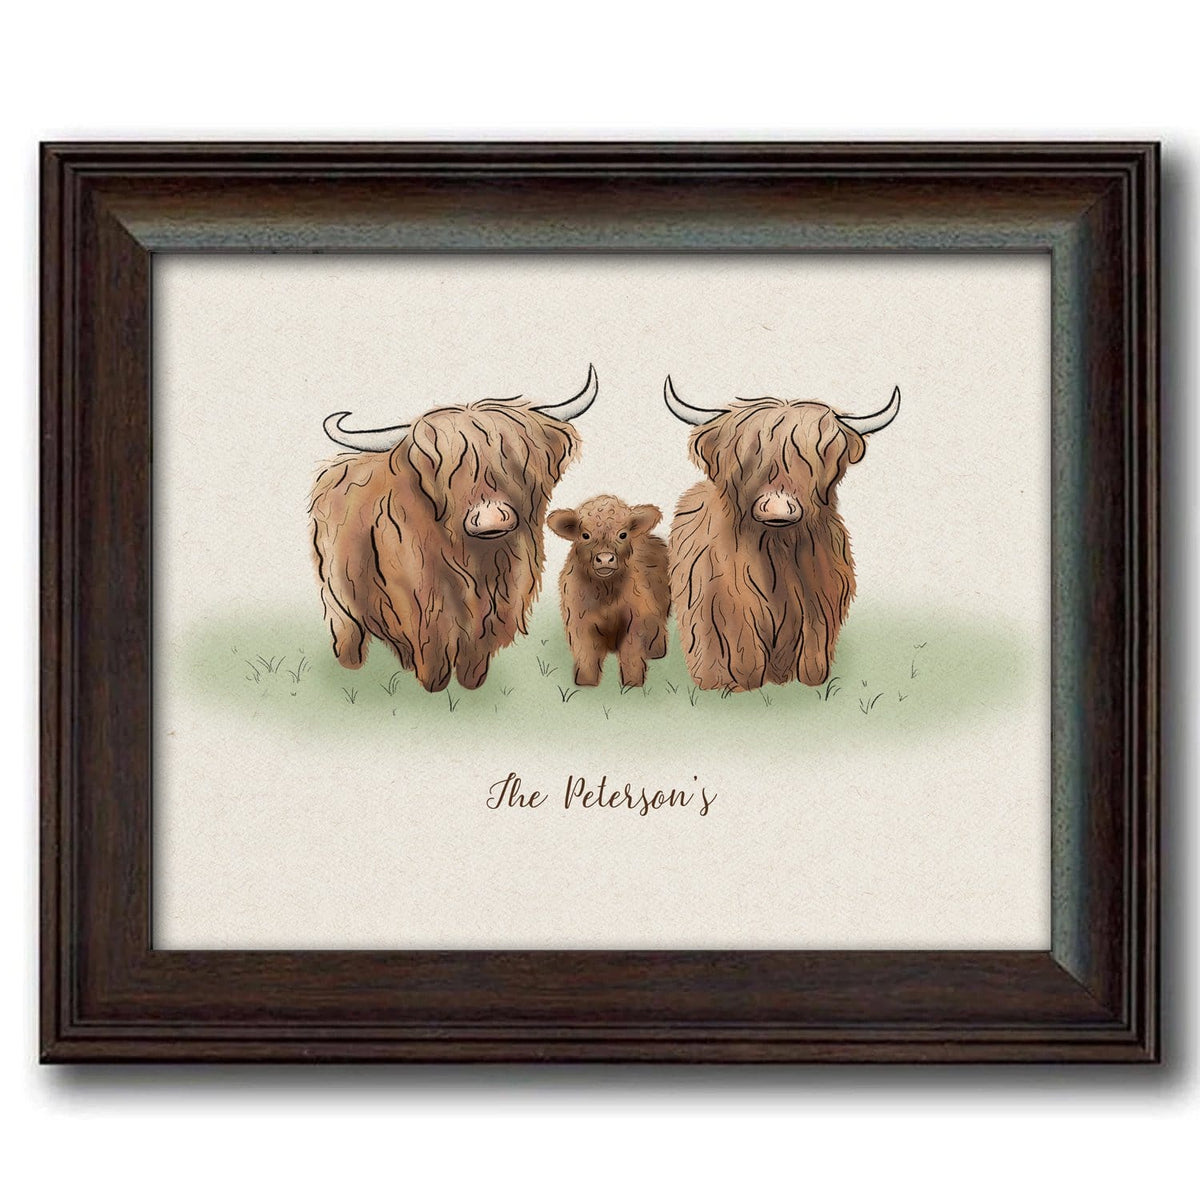 Highland cow family art framed under glass